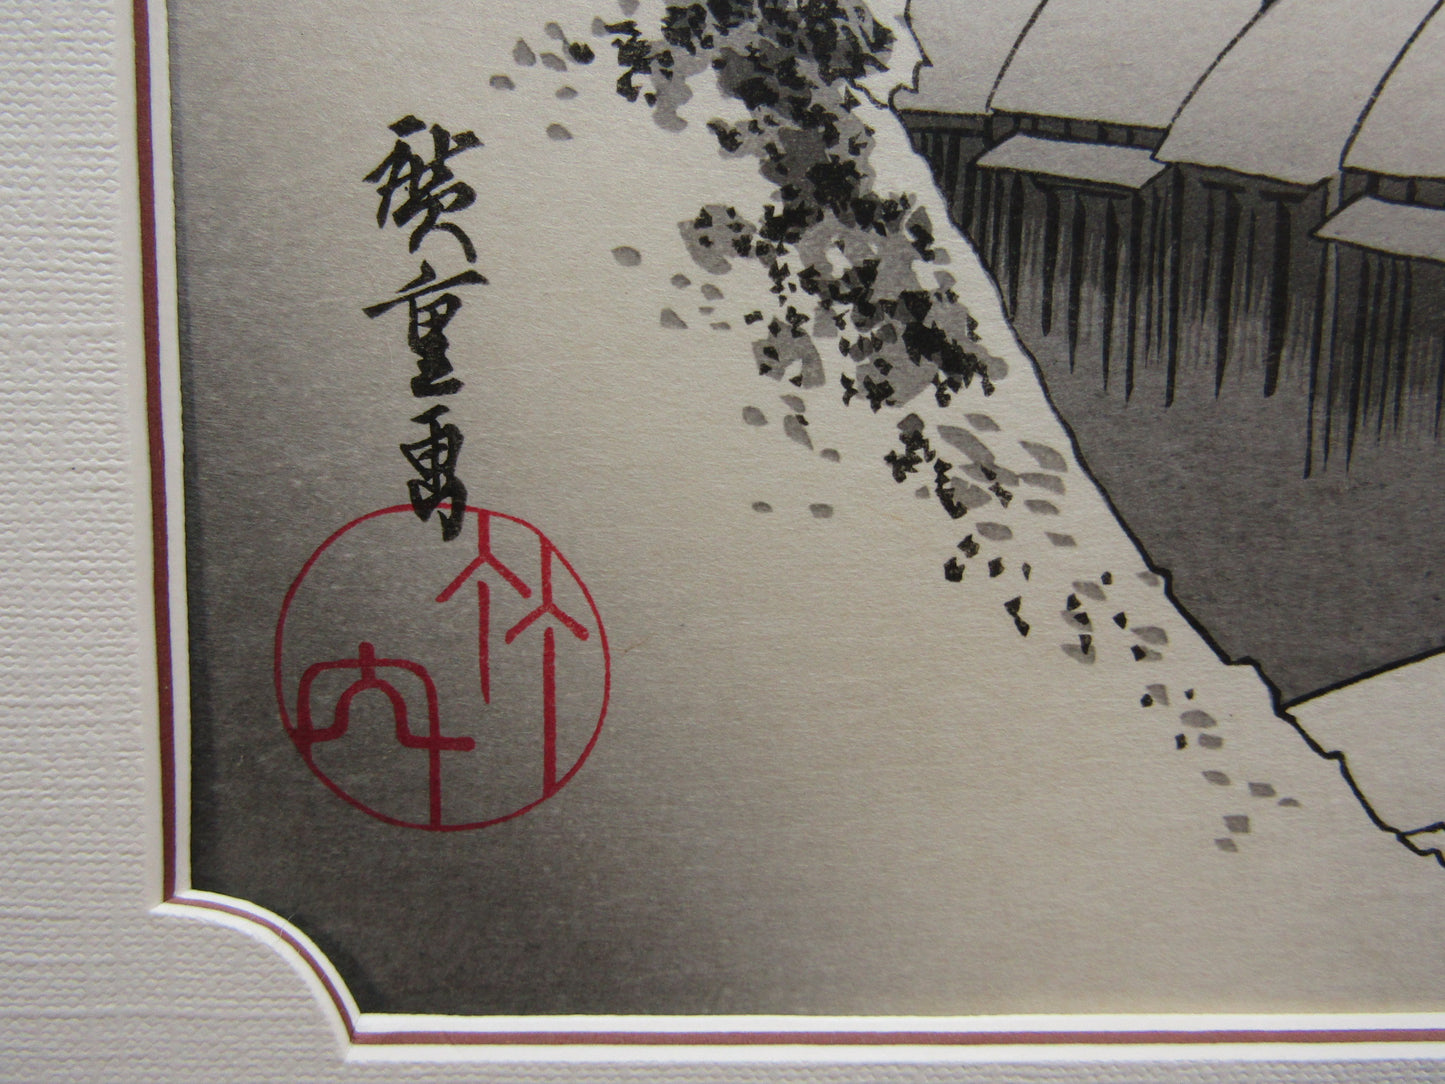 "Kanbara snow at night" Hiroshige Framed Woodblock print